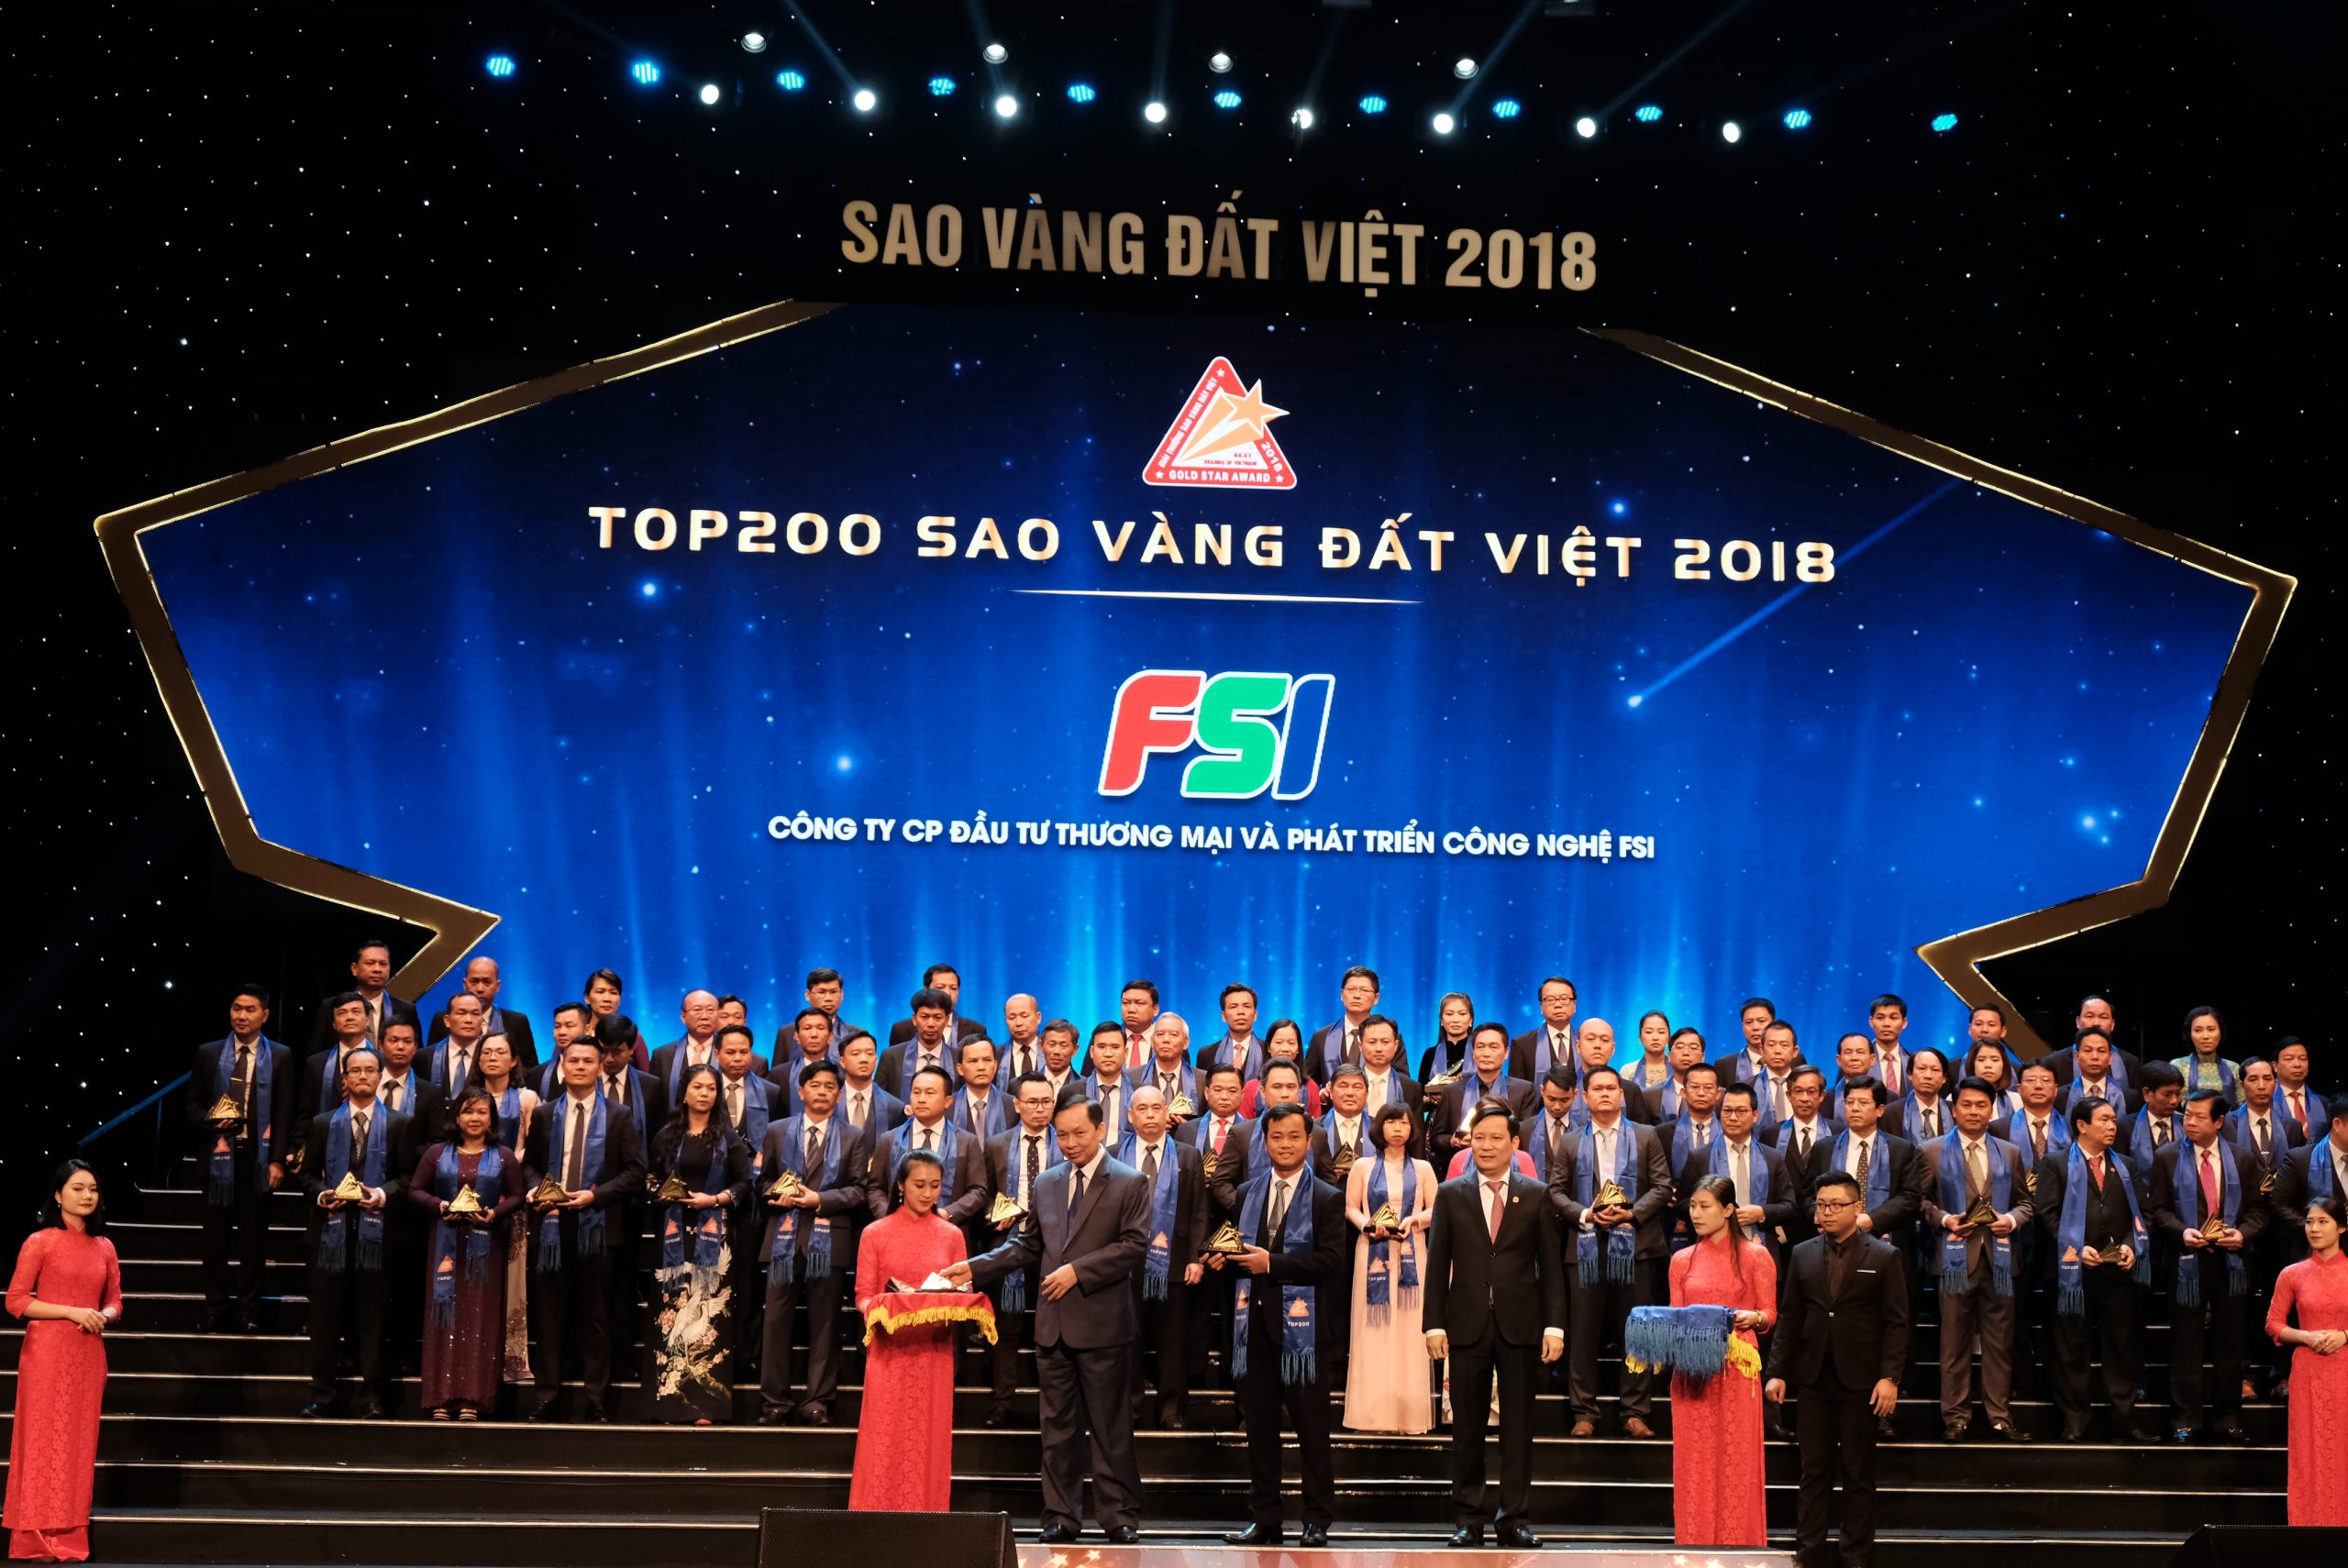 FSI vinh dự là đơn chuyển đổi số đầu tiên được vinh danh trong lễ trao giải Sao vàng Đất Việt năm 2018